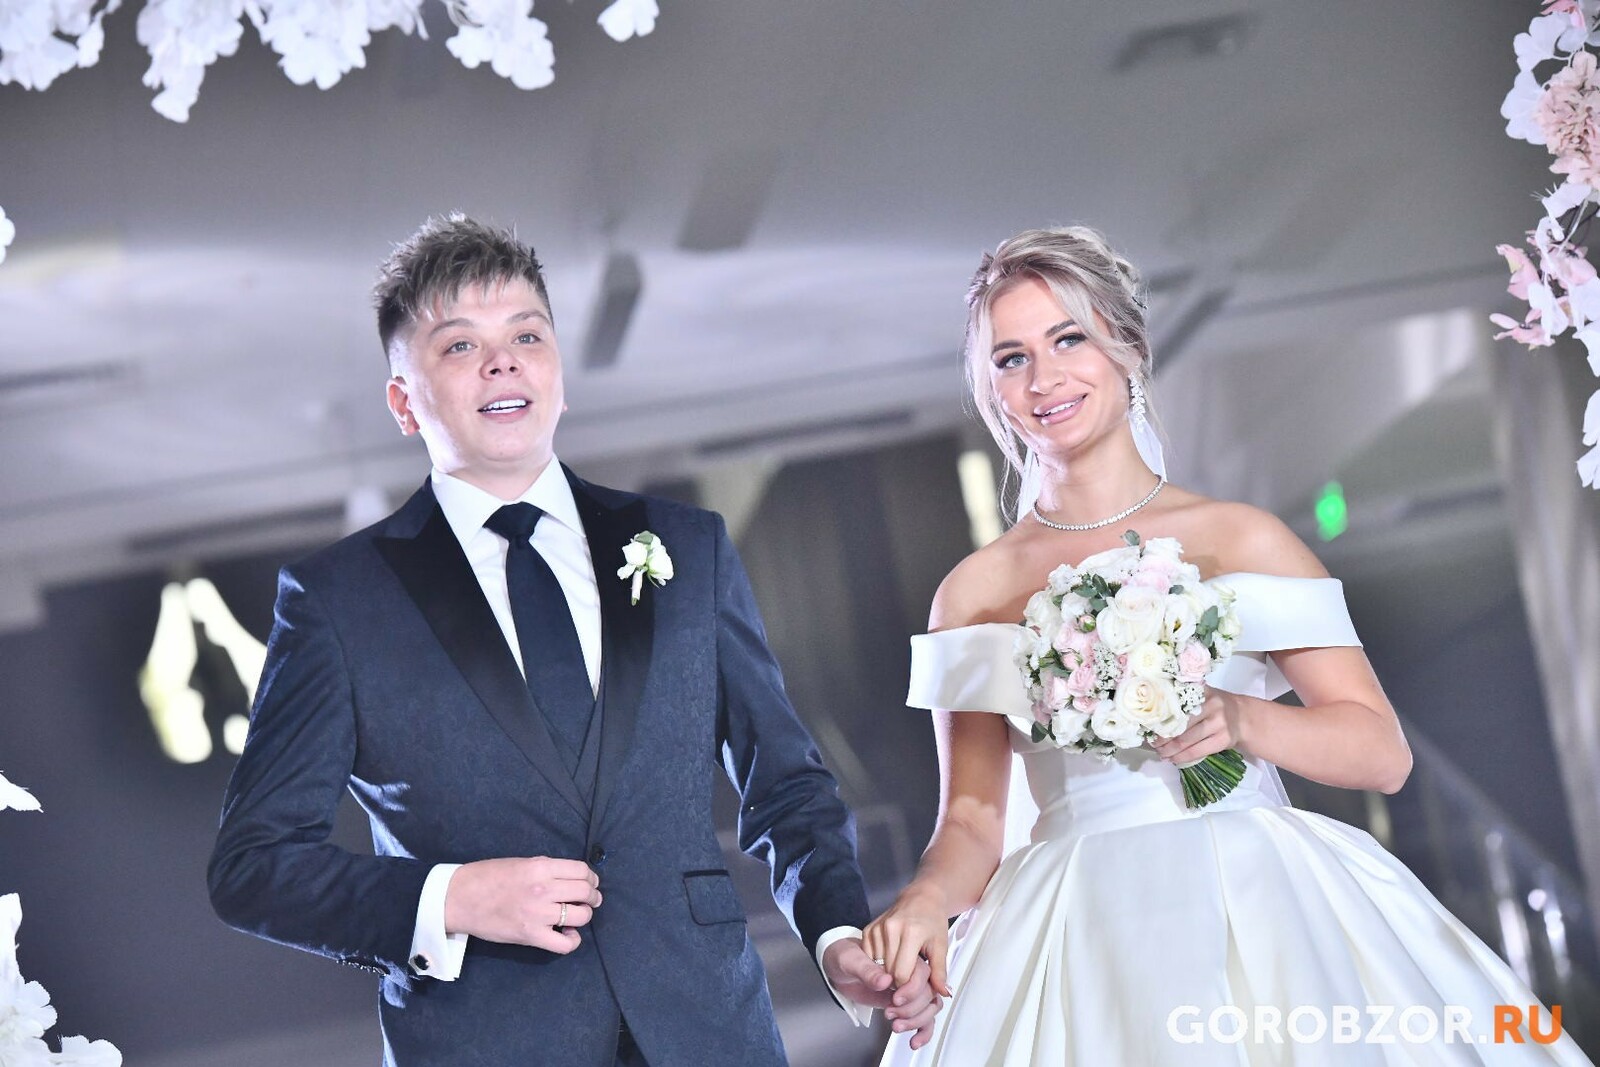 Радий Хабиров стал гостем на свадьбе Элвина Грея в Уфе